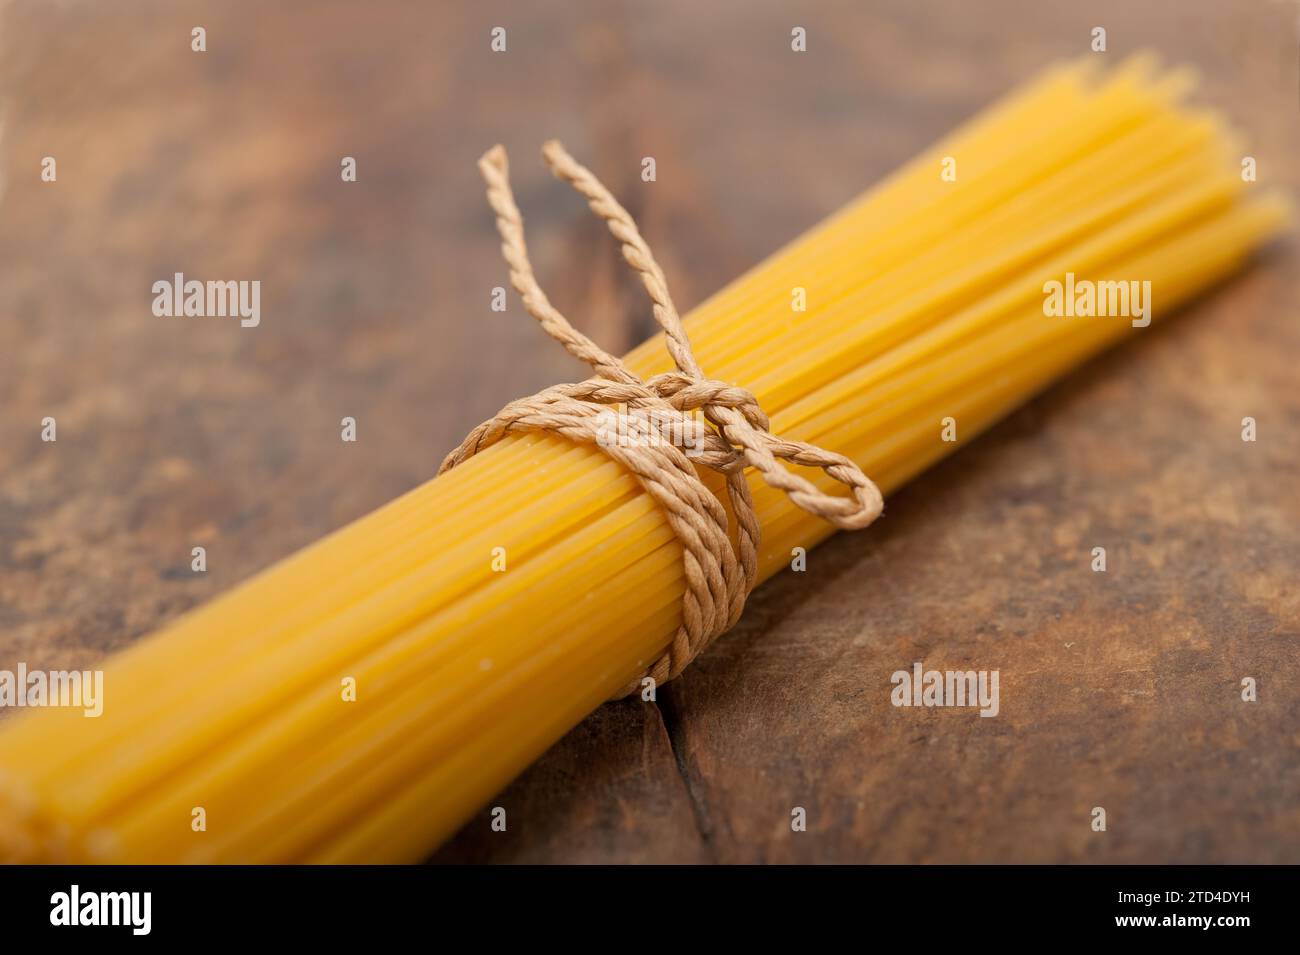 Las pastas italianas espaguetis atados con una cuerda en una tabla rústica Foto de stock